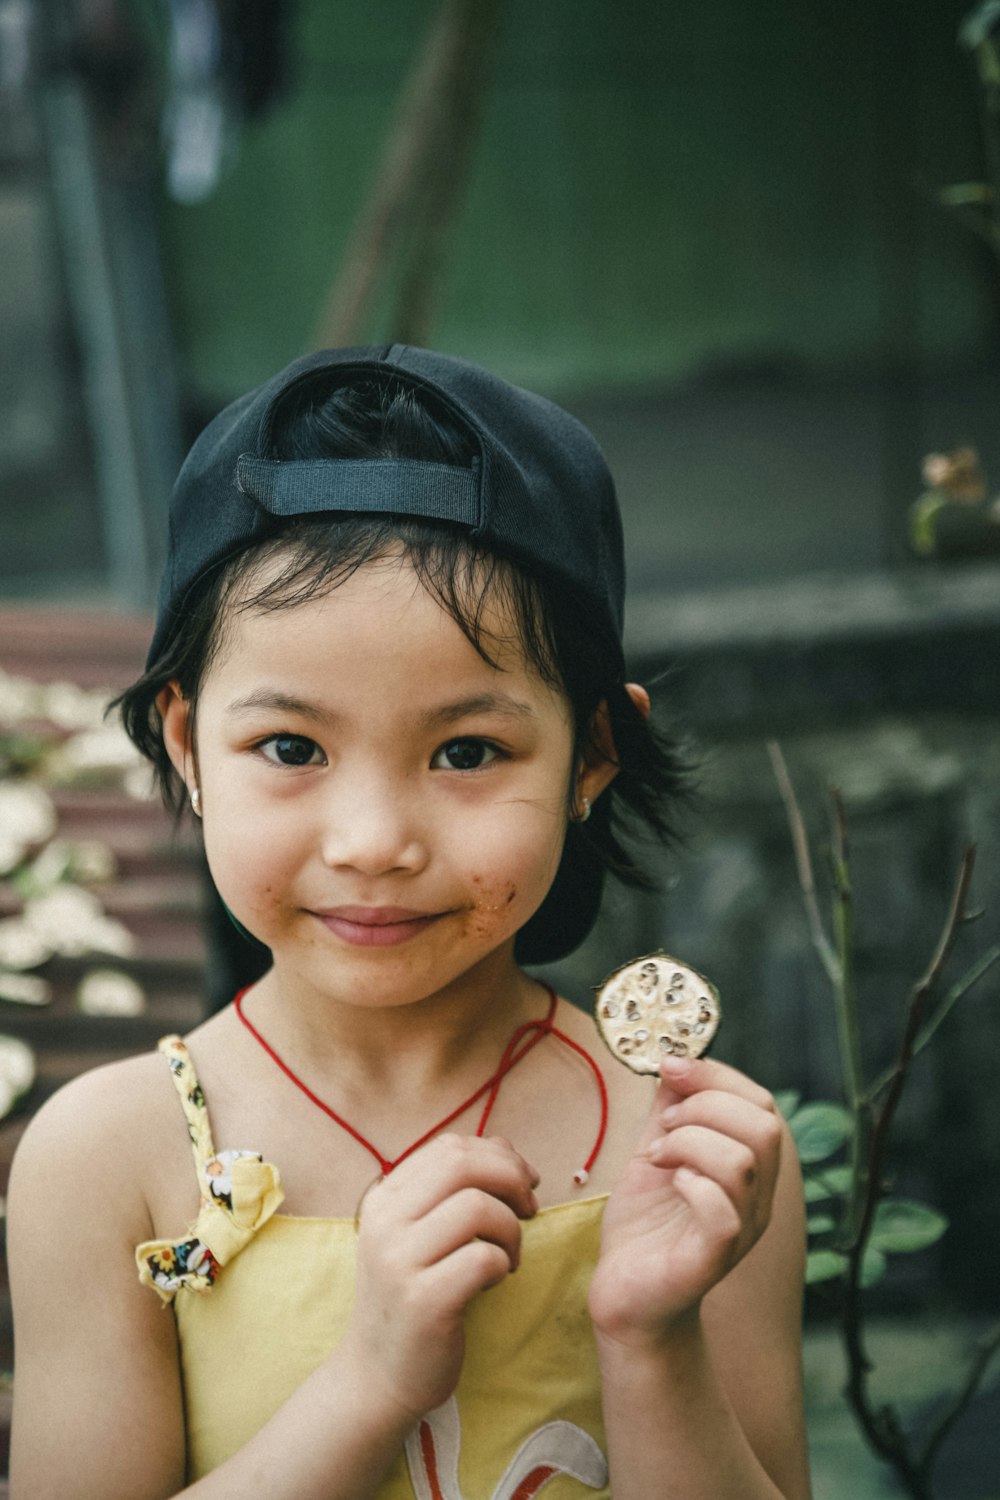 Photographie de portrait de fille tenant une pièce de monnaie ronde